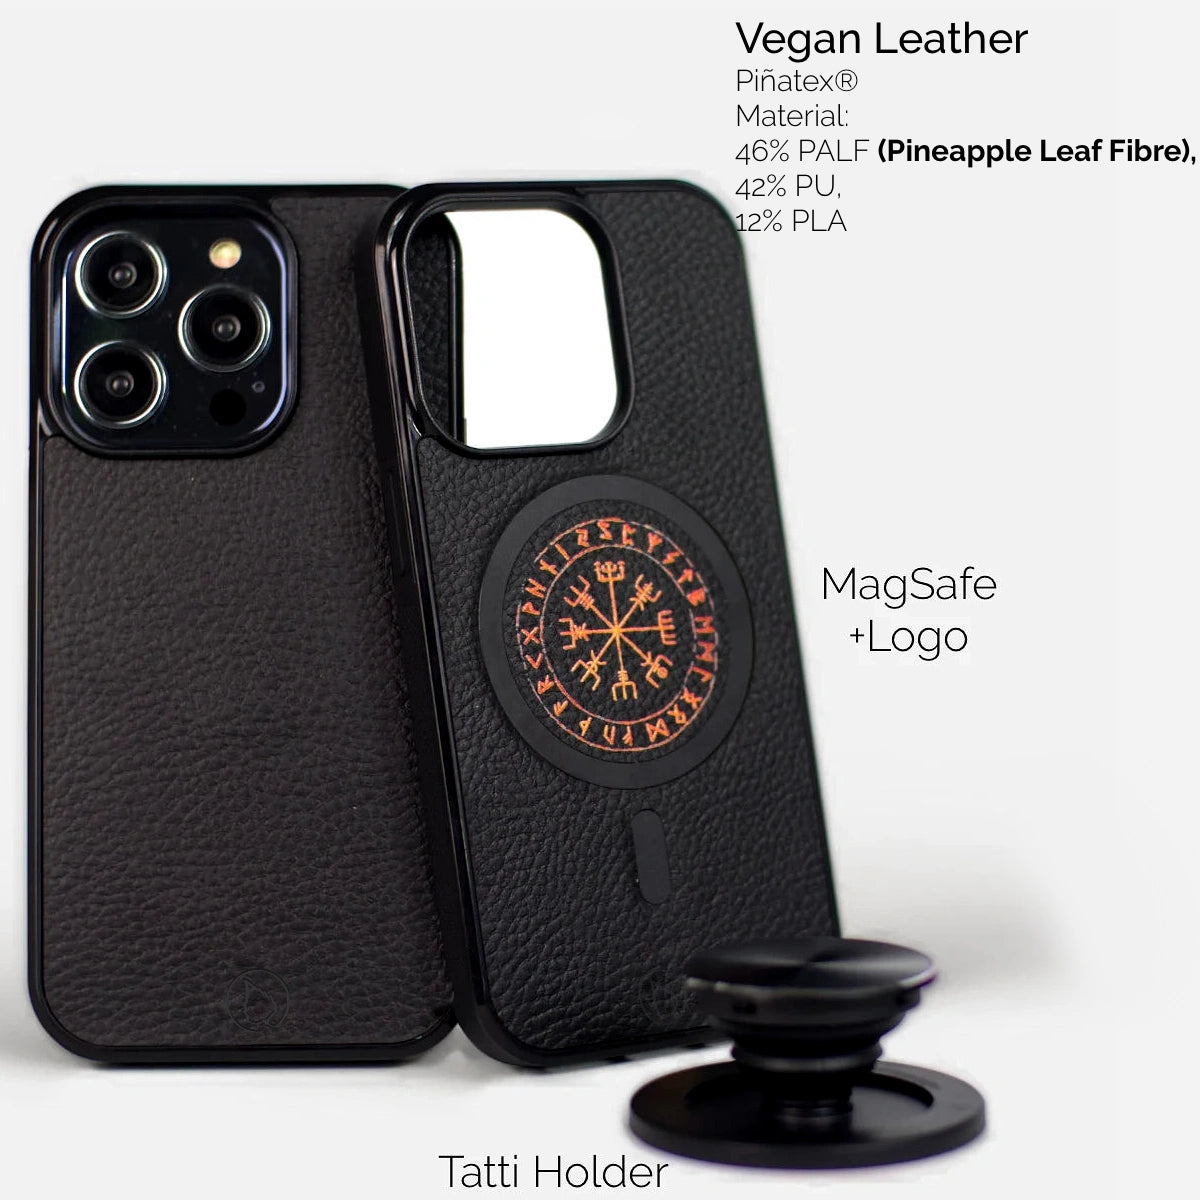 Vegaaniset, vastuulliset, ekologiset iPhone kuoret, kotelot ja suojakuoret MagSafe toiminnolla mustaa vegaanista nahkaa